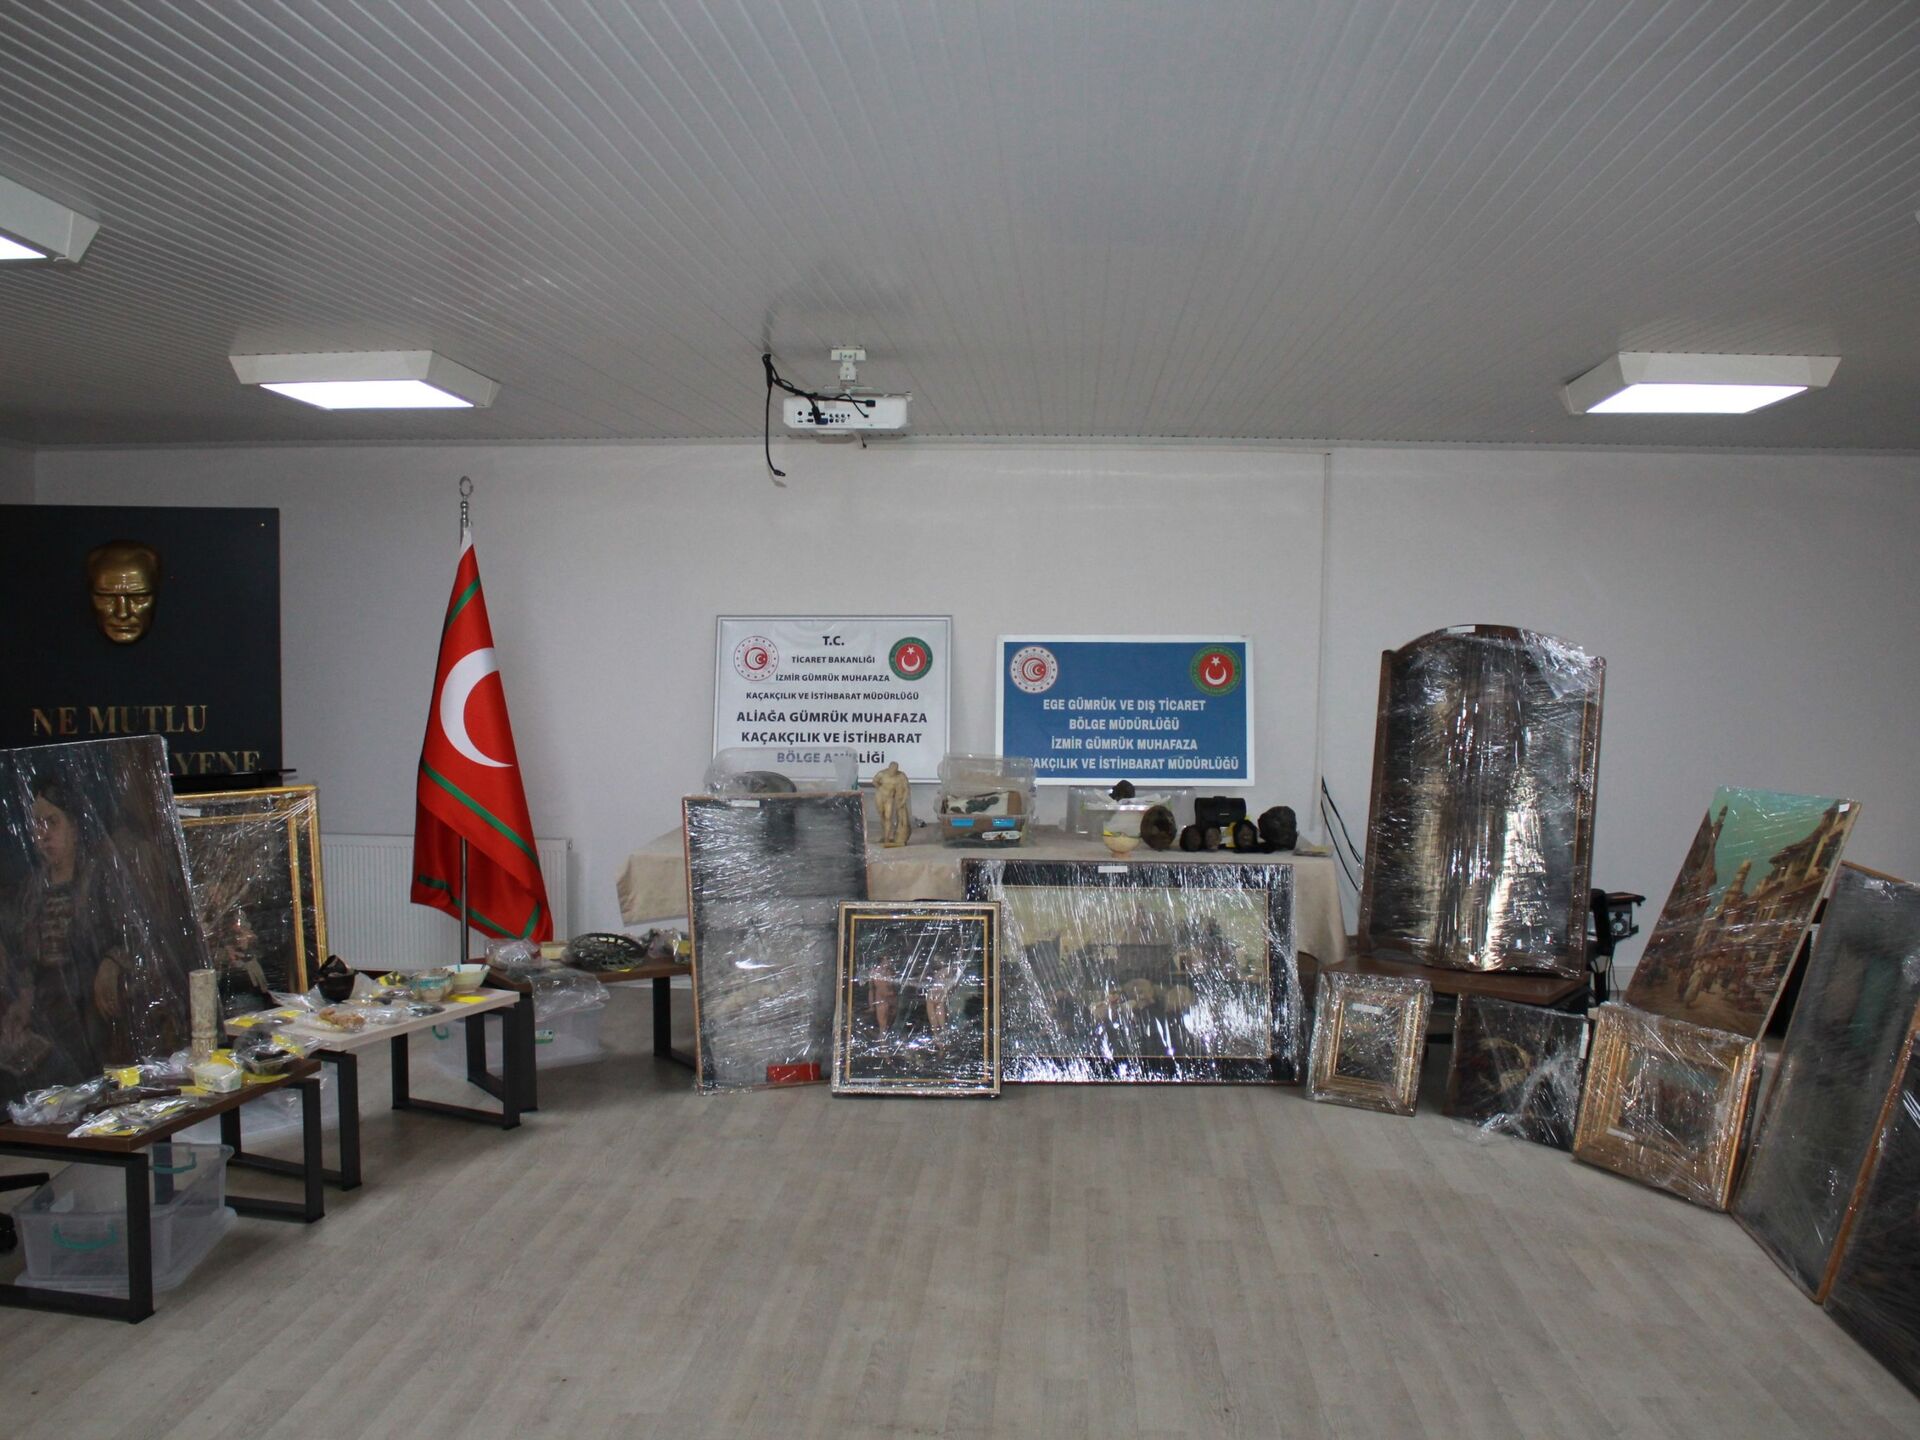 Artefatos históricos apresentados pelas autoridades da Turquia - Sputnik Brasil, 1920, 19.12.2021